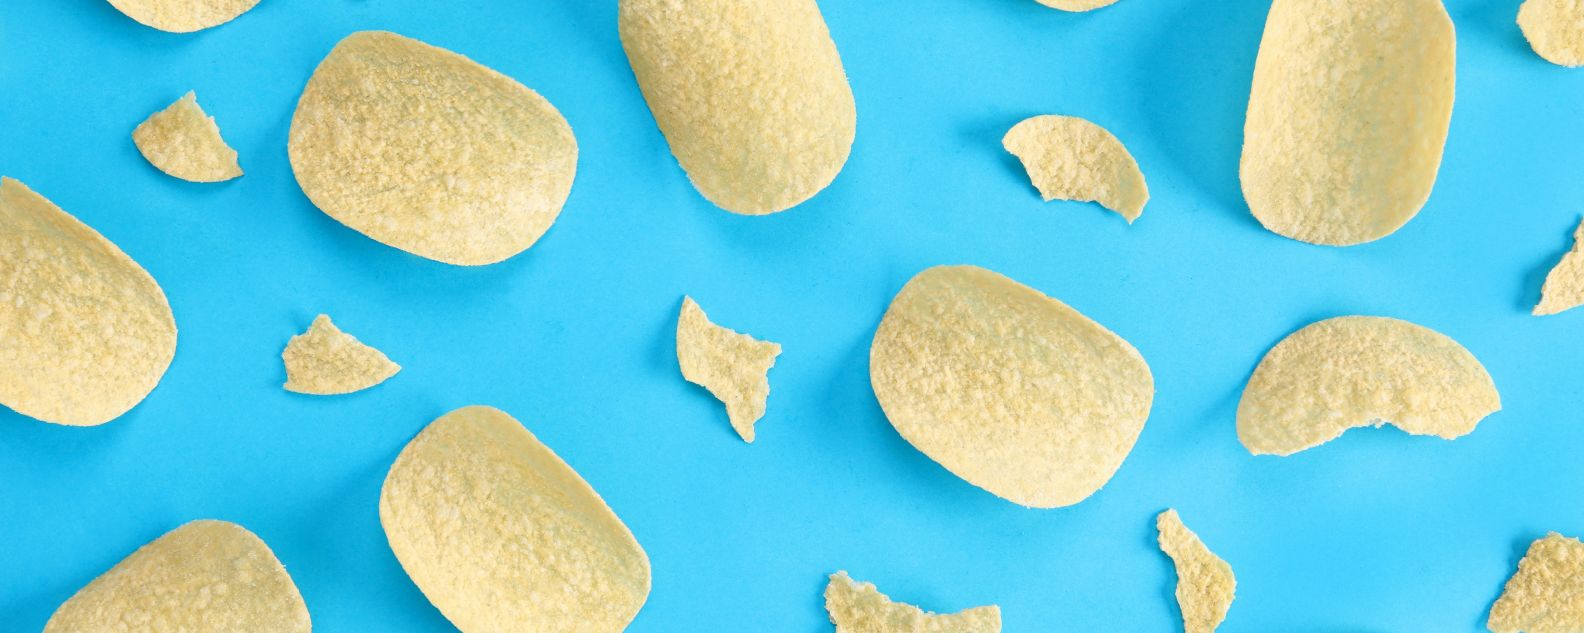 Pattern potato chips on blue background